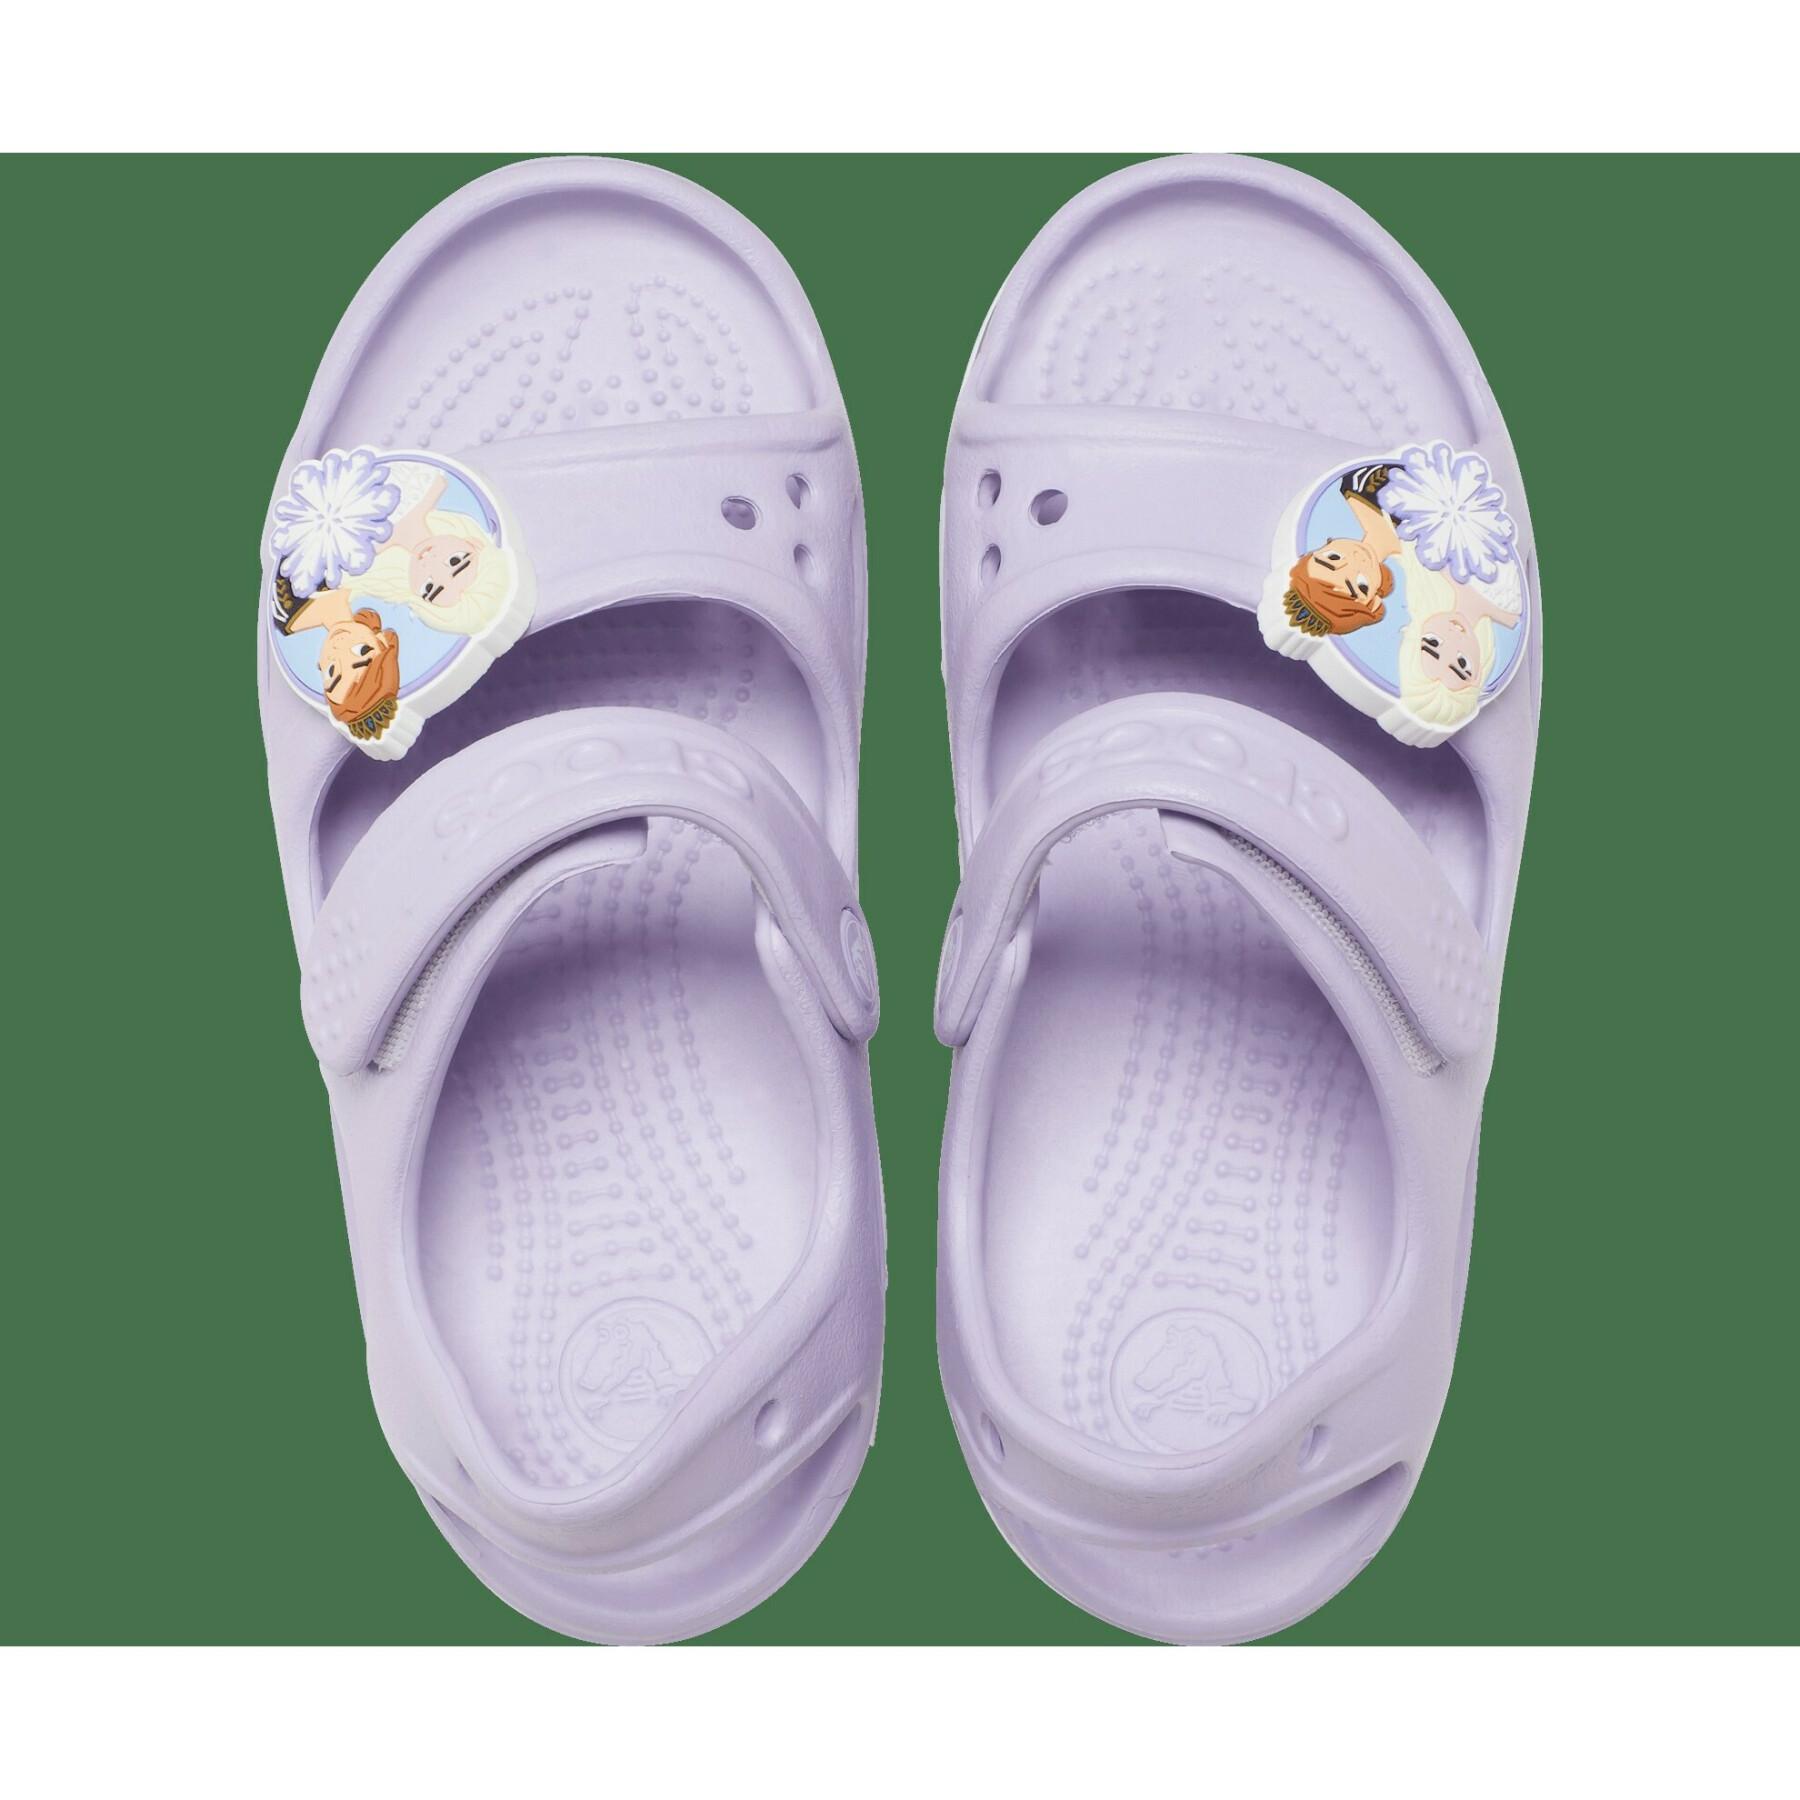 Sandali per bambini Crocs FL Disney Frozen II